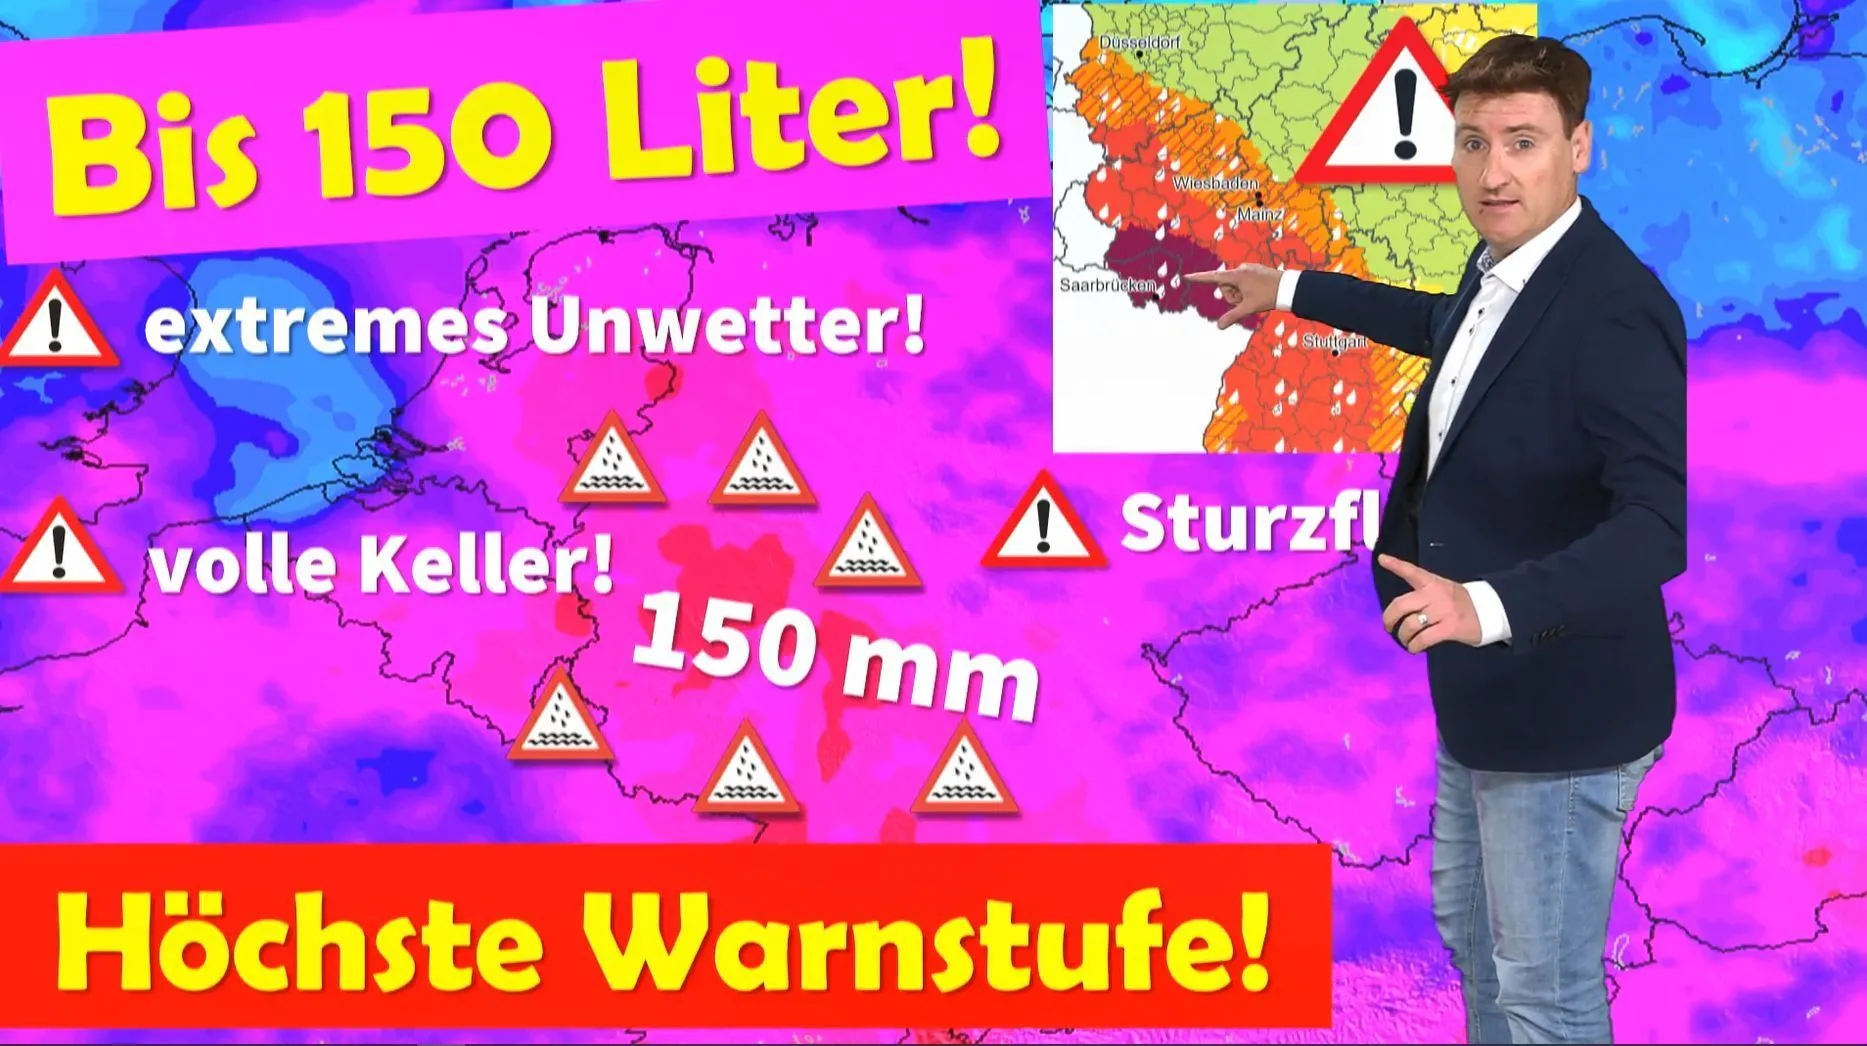 Der Deutsche Wetterdienst ruft die höchste Warnstufe LILA aus: Extremes Unwetter! Erinnerungen an die Ahrtal-Flut werden wach!